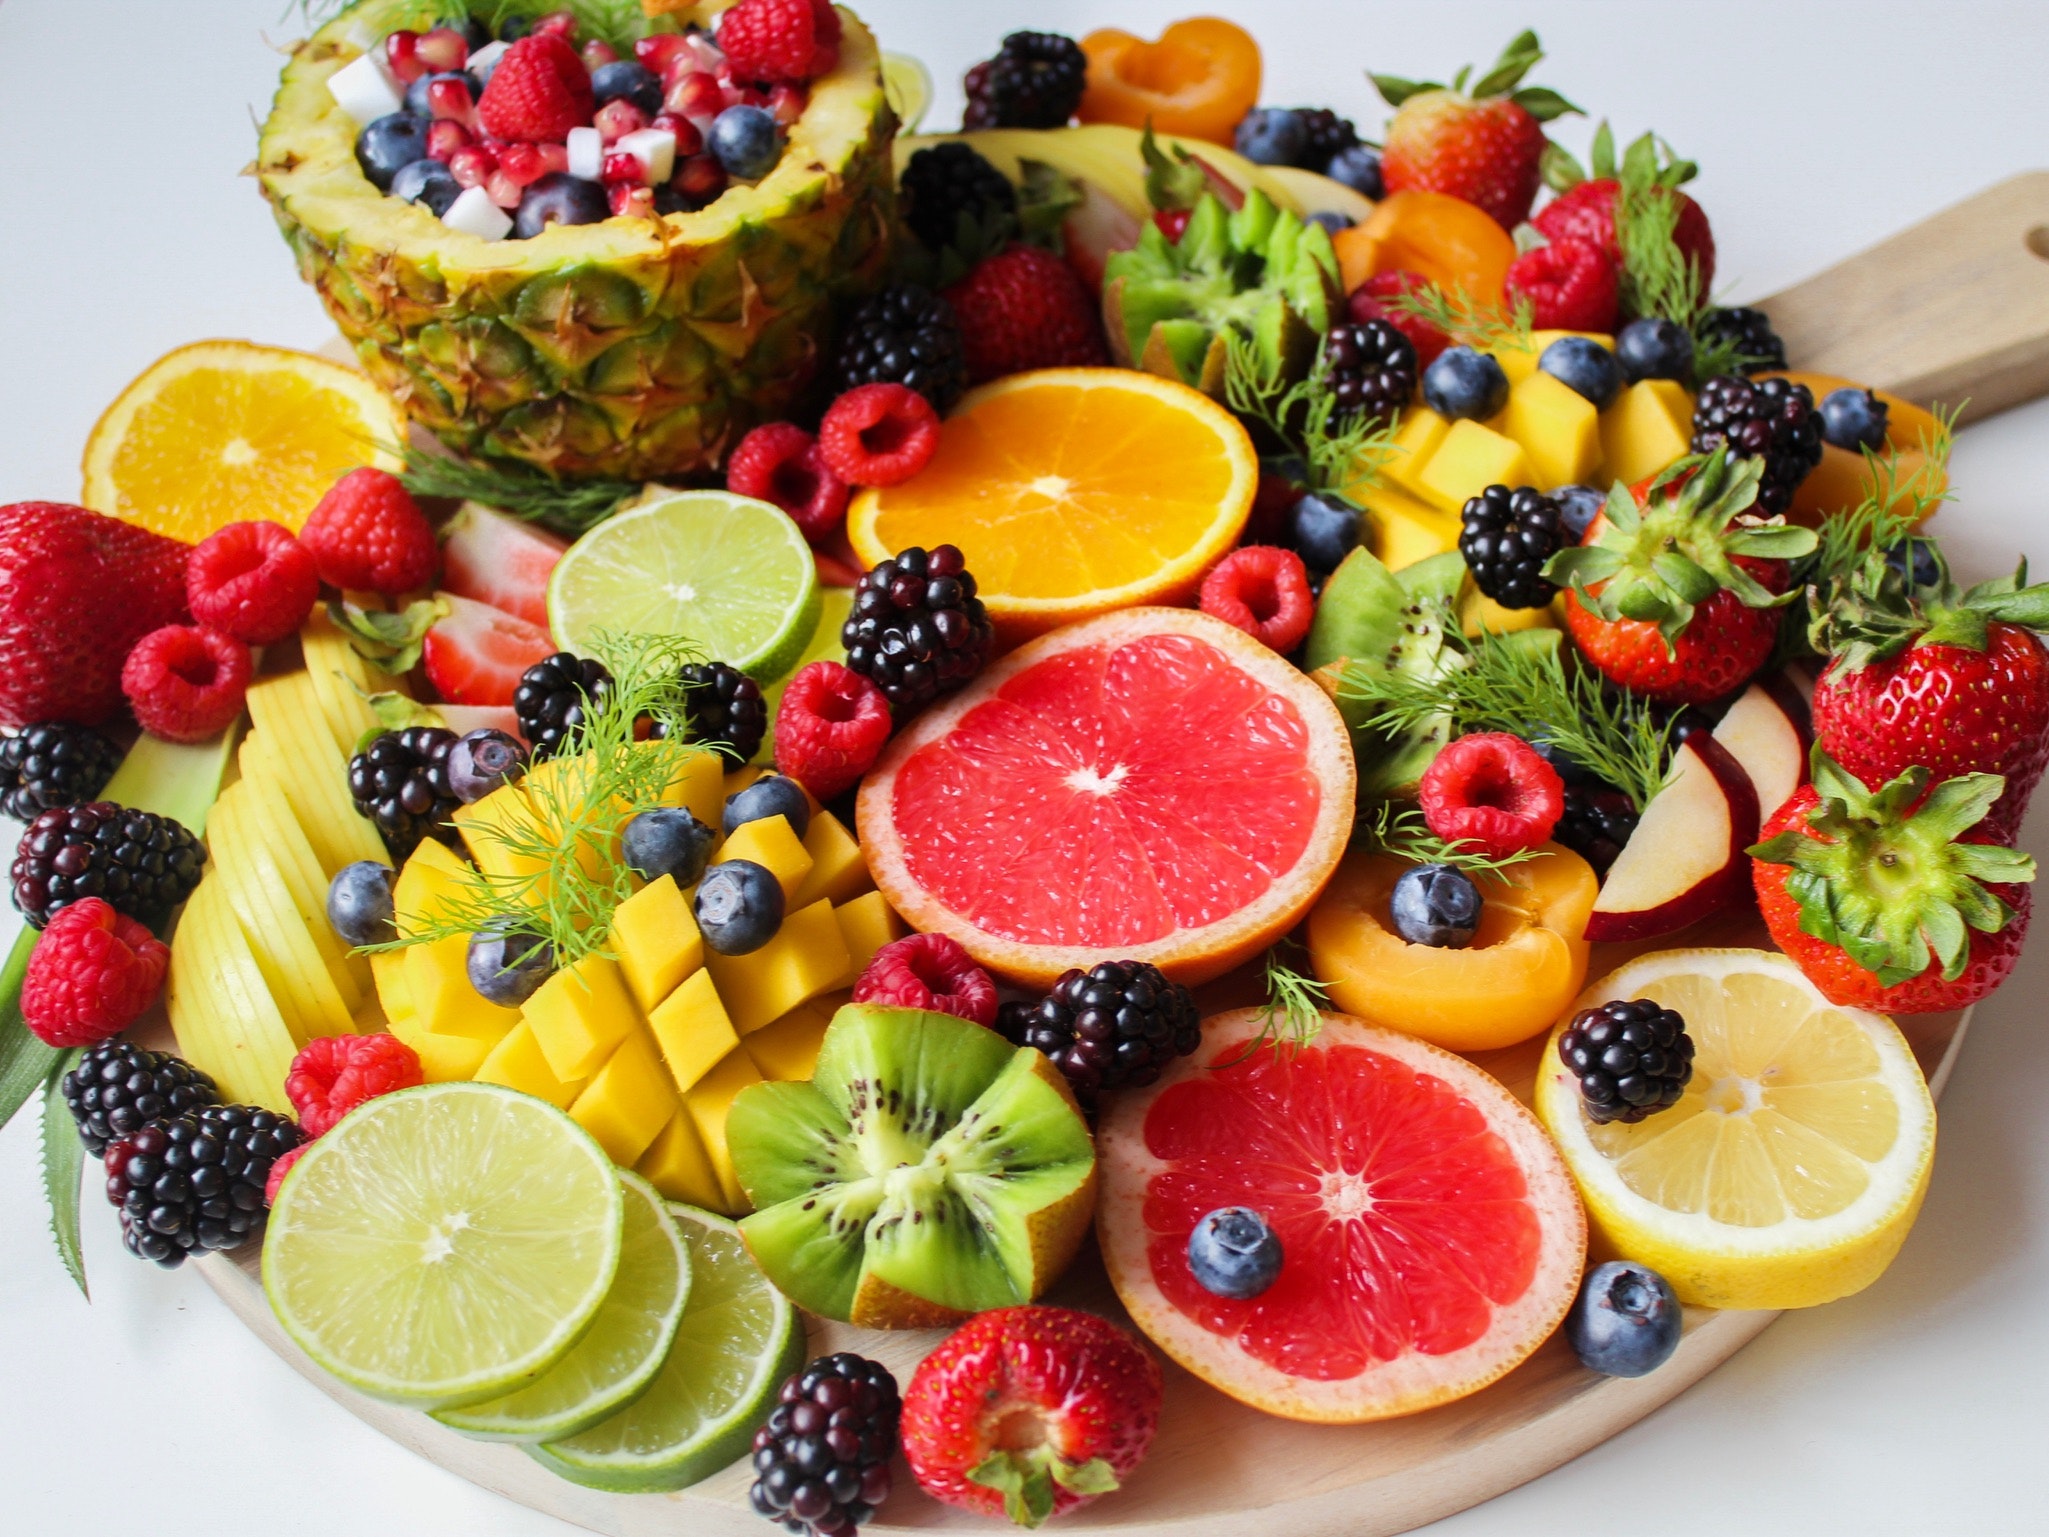 Banyak mengonsumsi buah merupakan hal yang baik di bulan Ramadhan